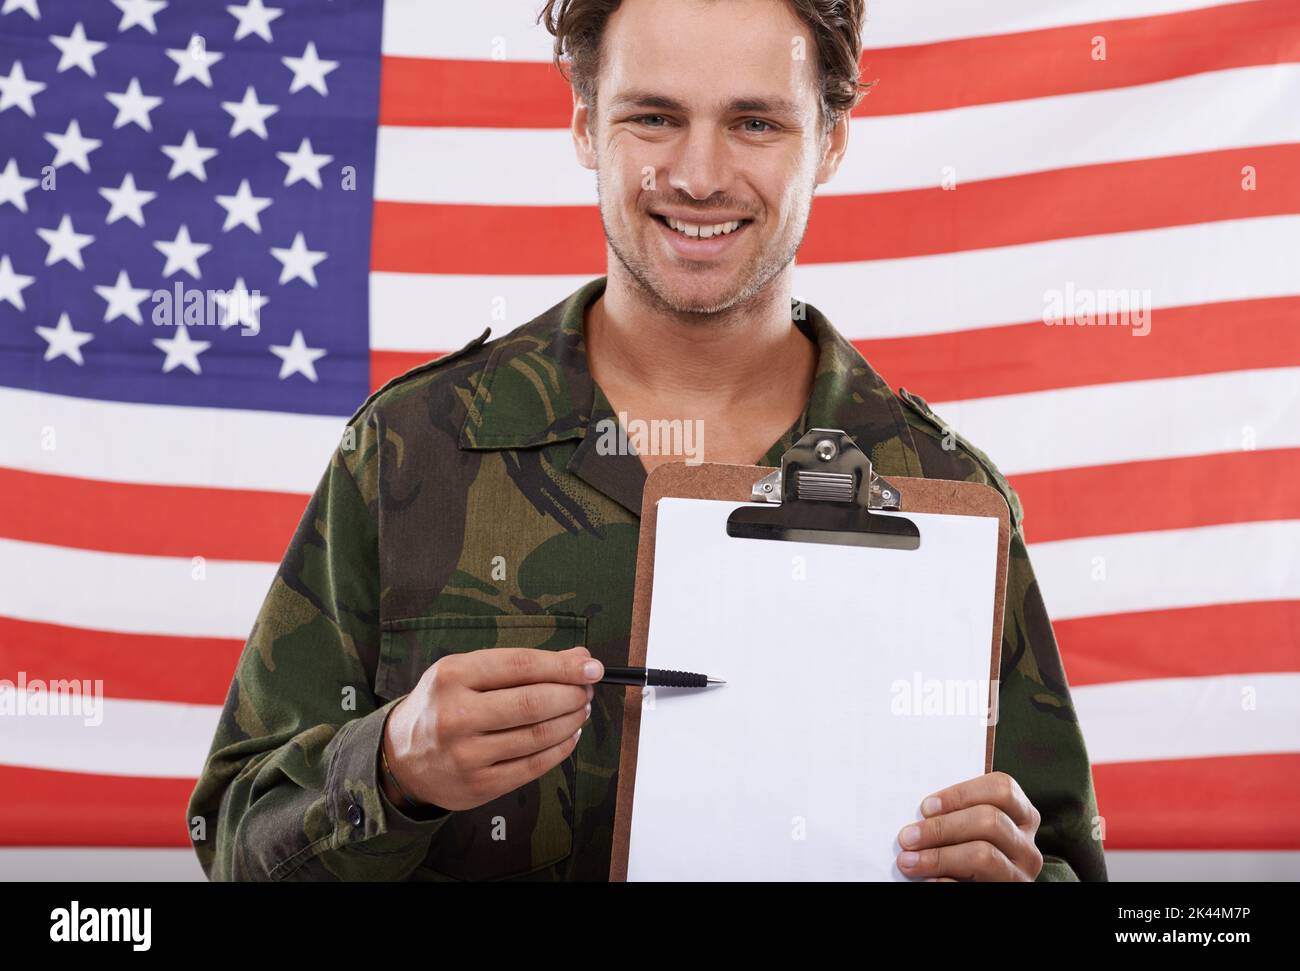 IVE inscrit. Un soldat américain tenant une planchette à pince devant le drapeau de son pays. Banque D'Images